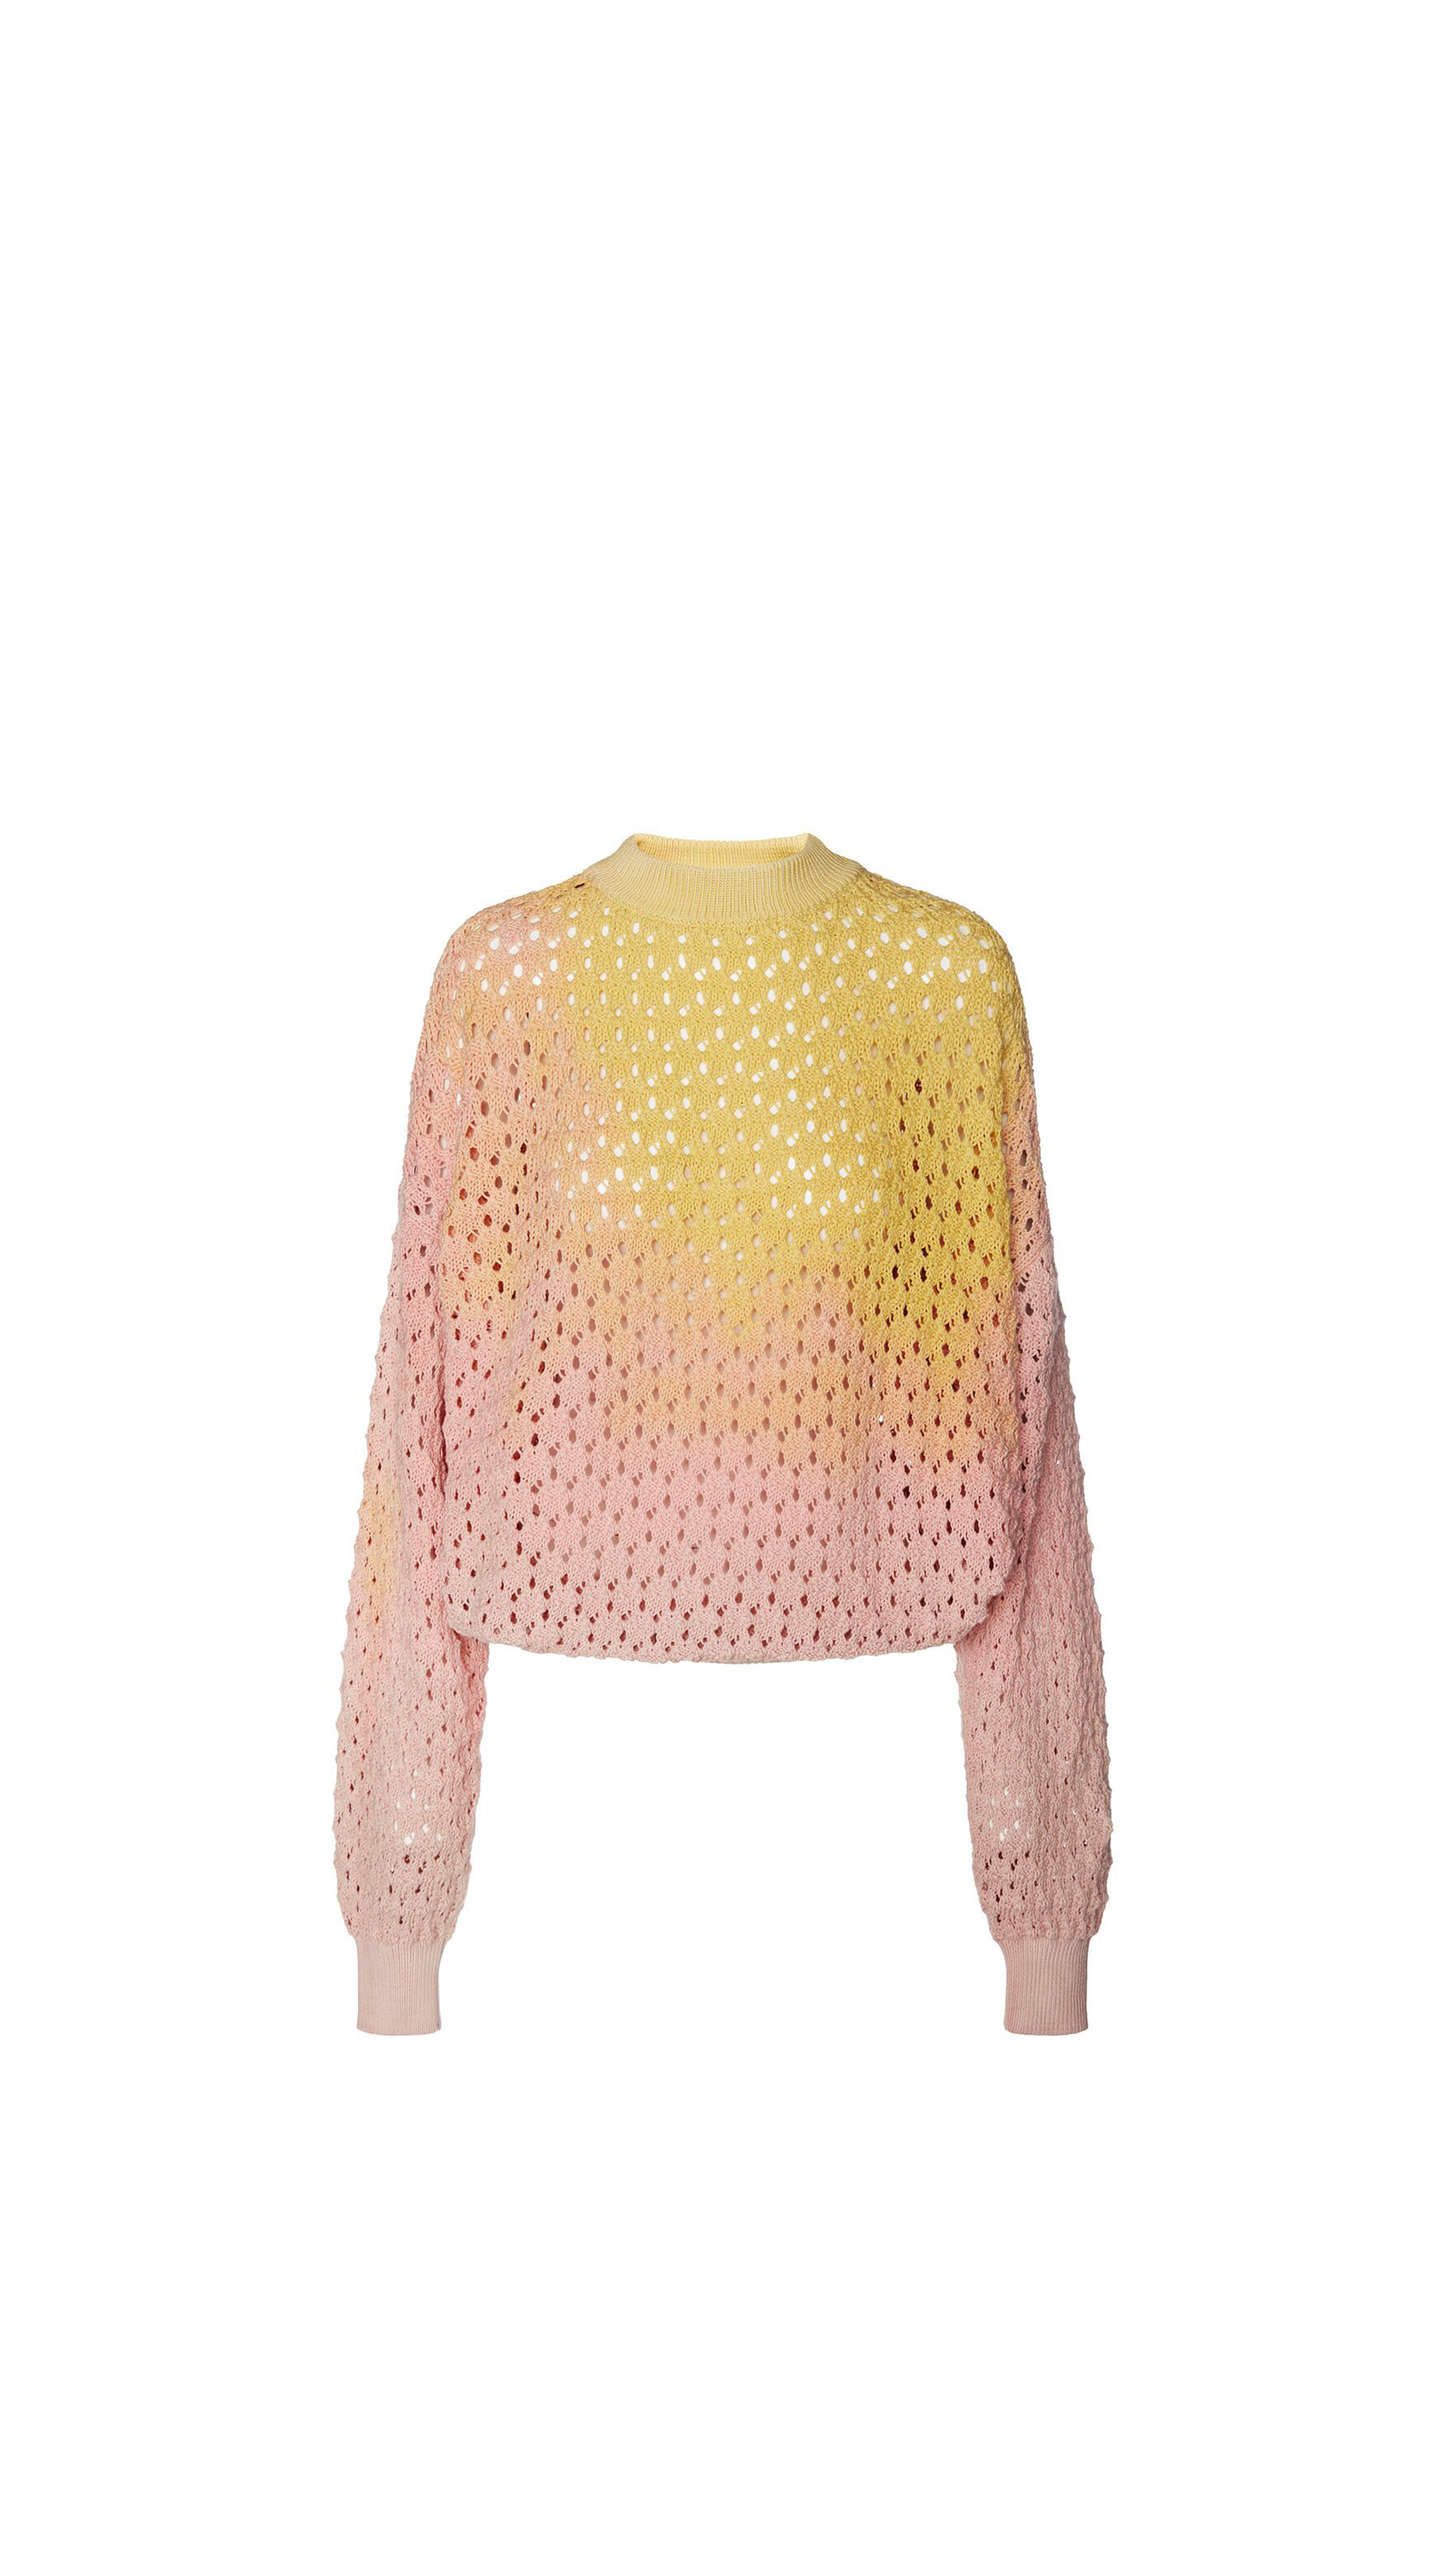 Tie-dye Sweater in Cotton Crochet - Pink / Orange